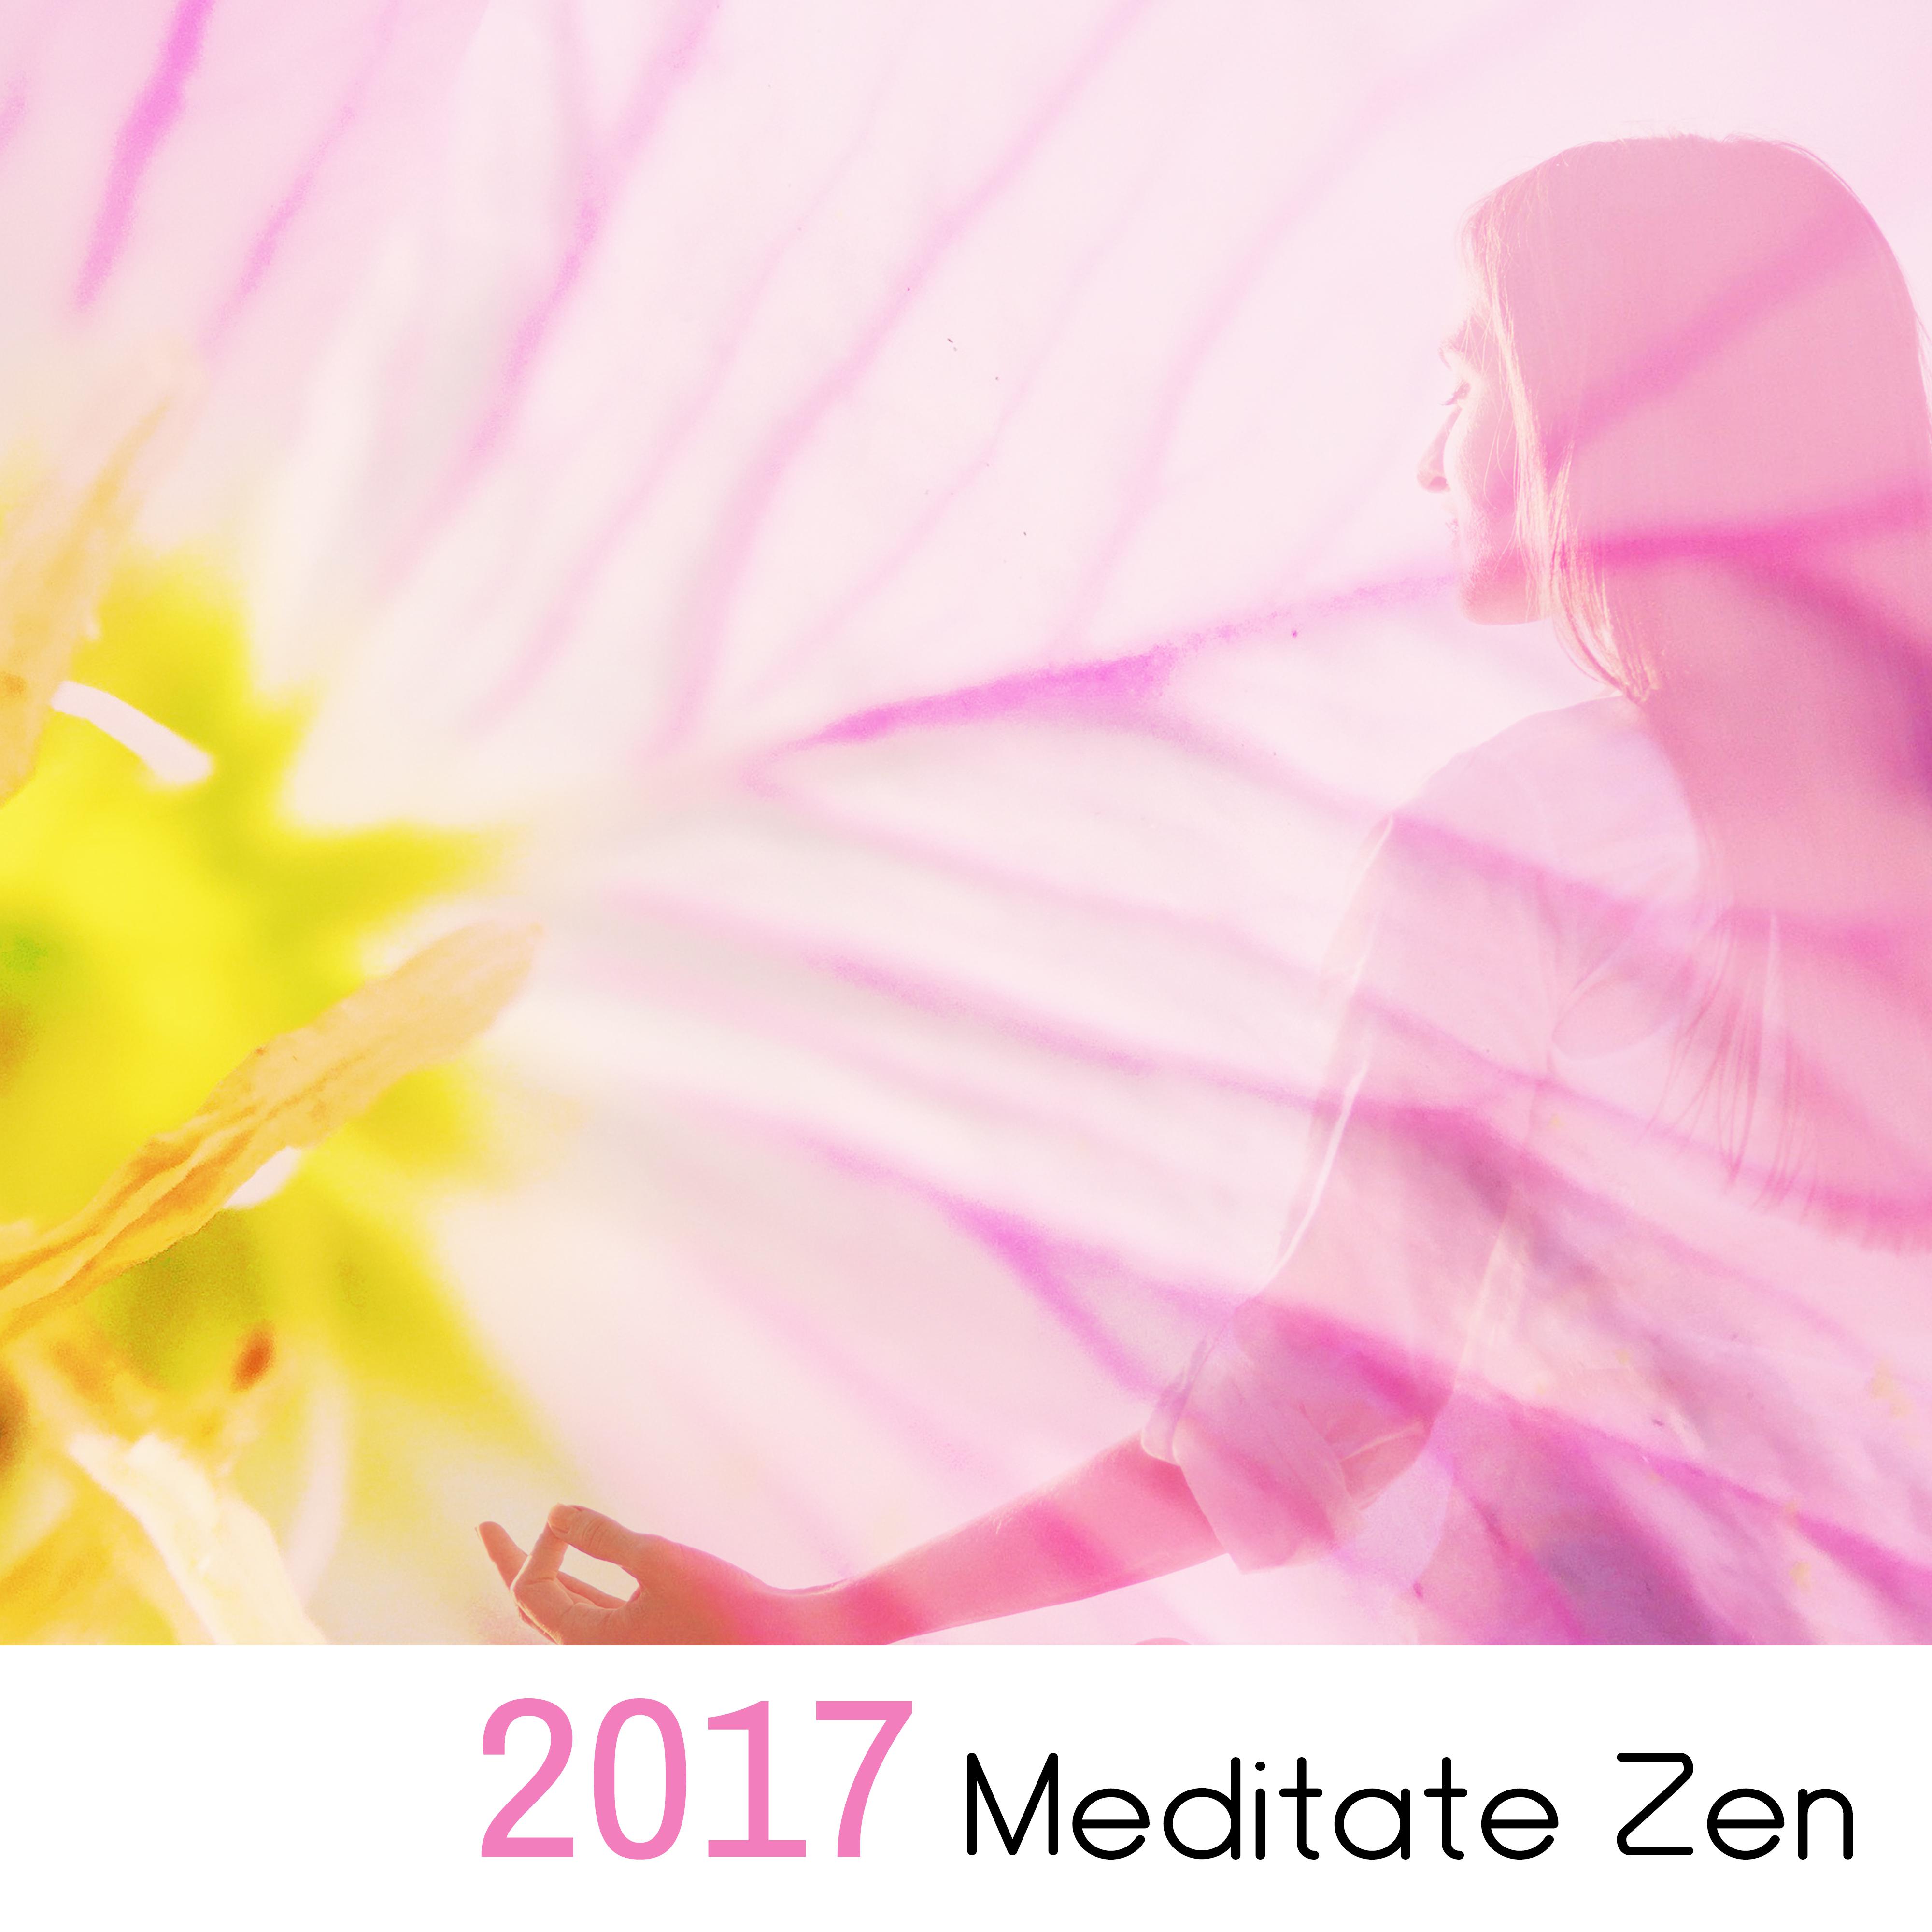 2017 Meditate Zen